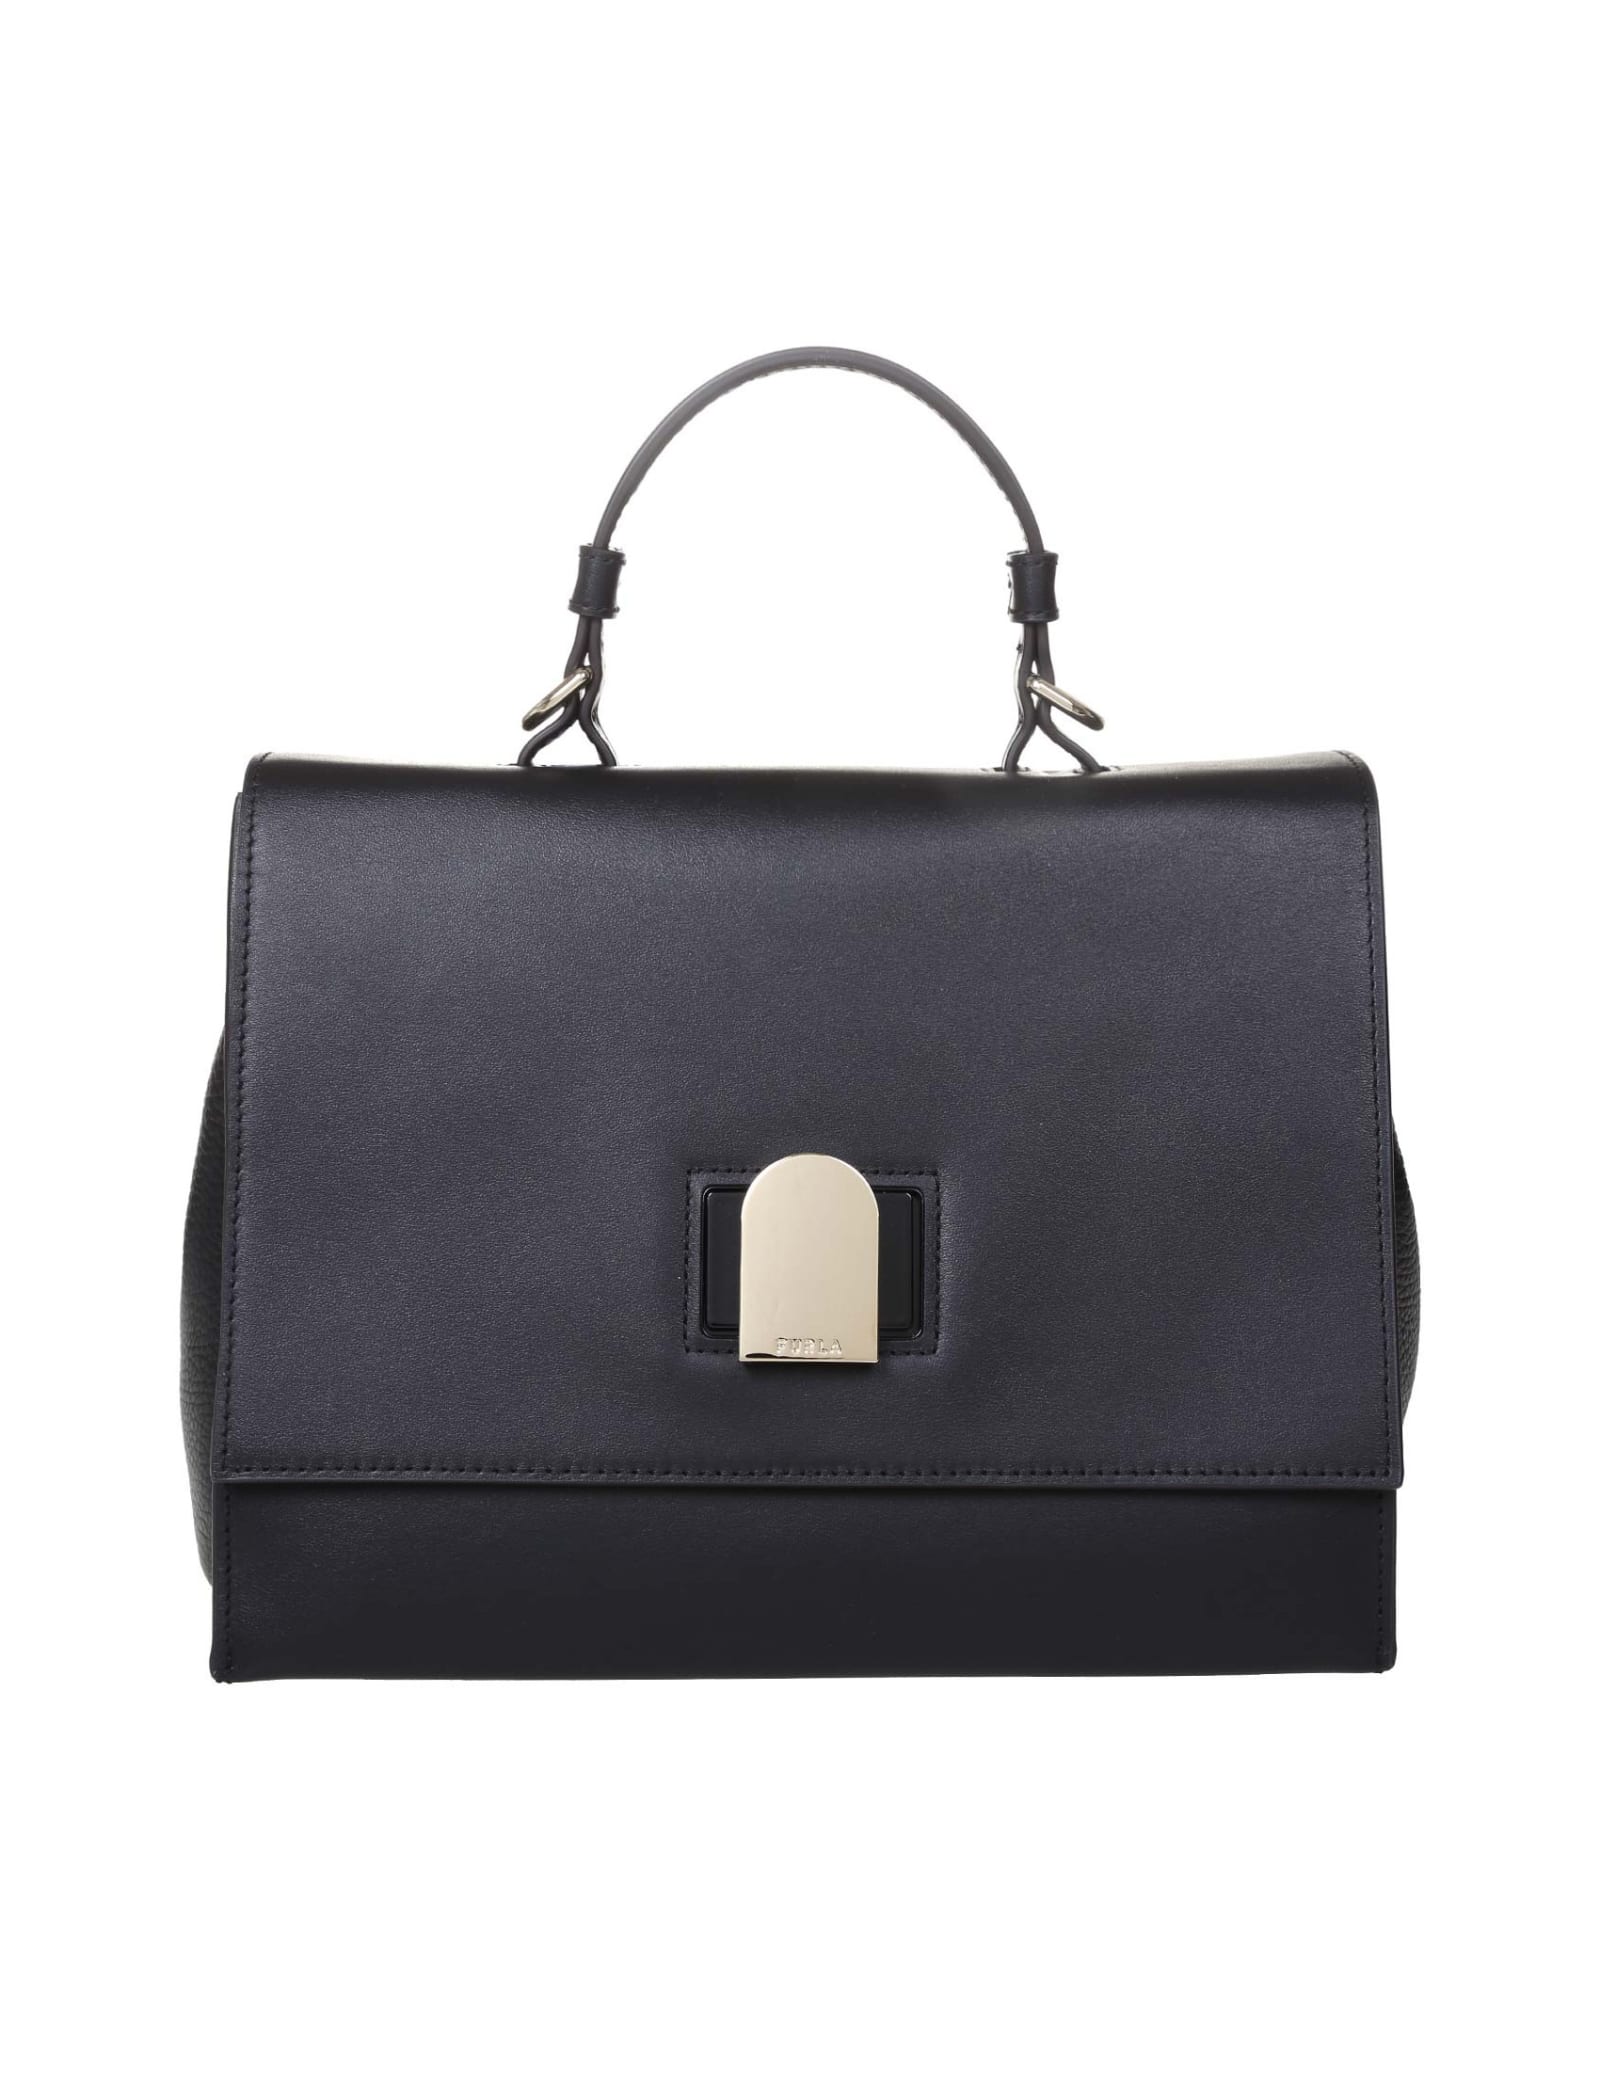 Furla Emma S Bag In Black Leather